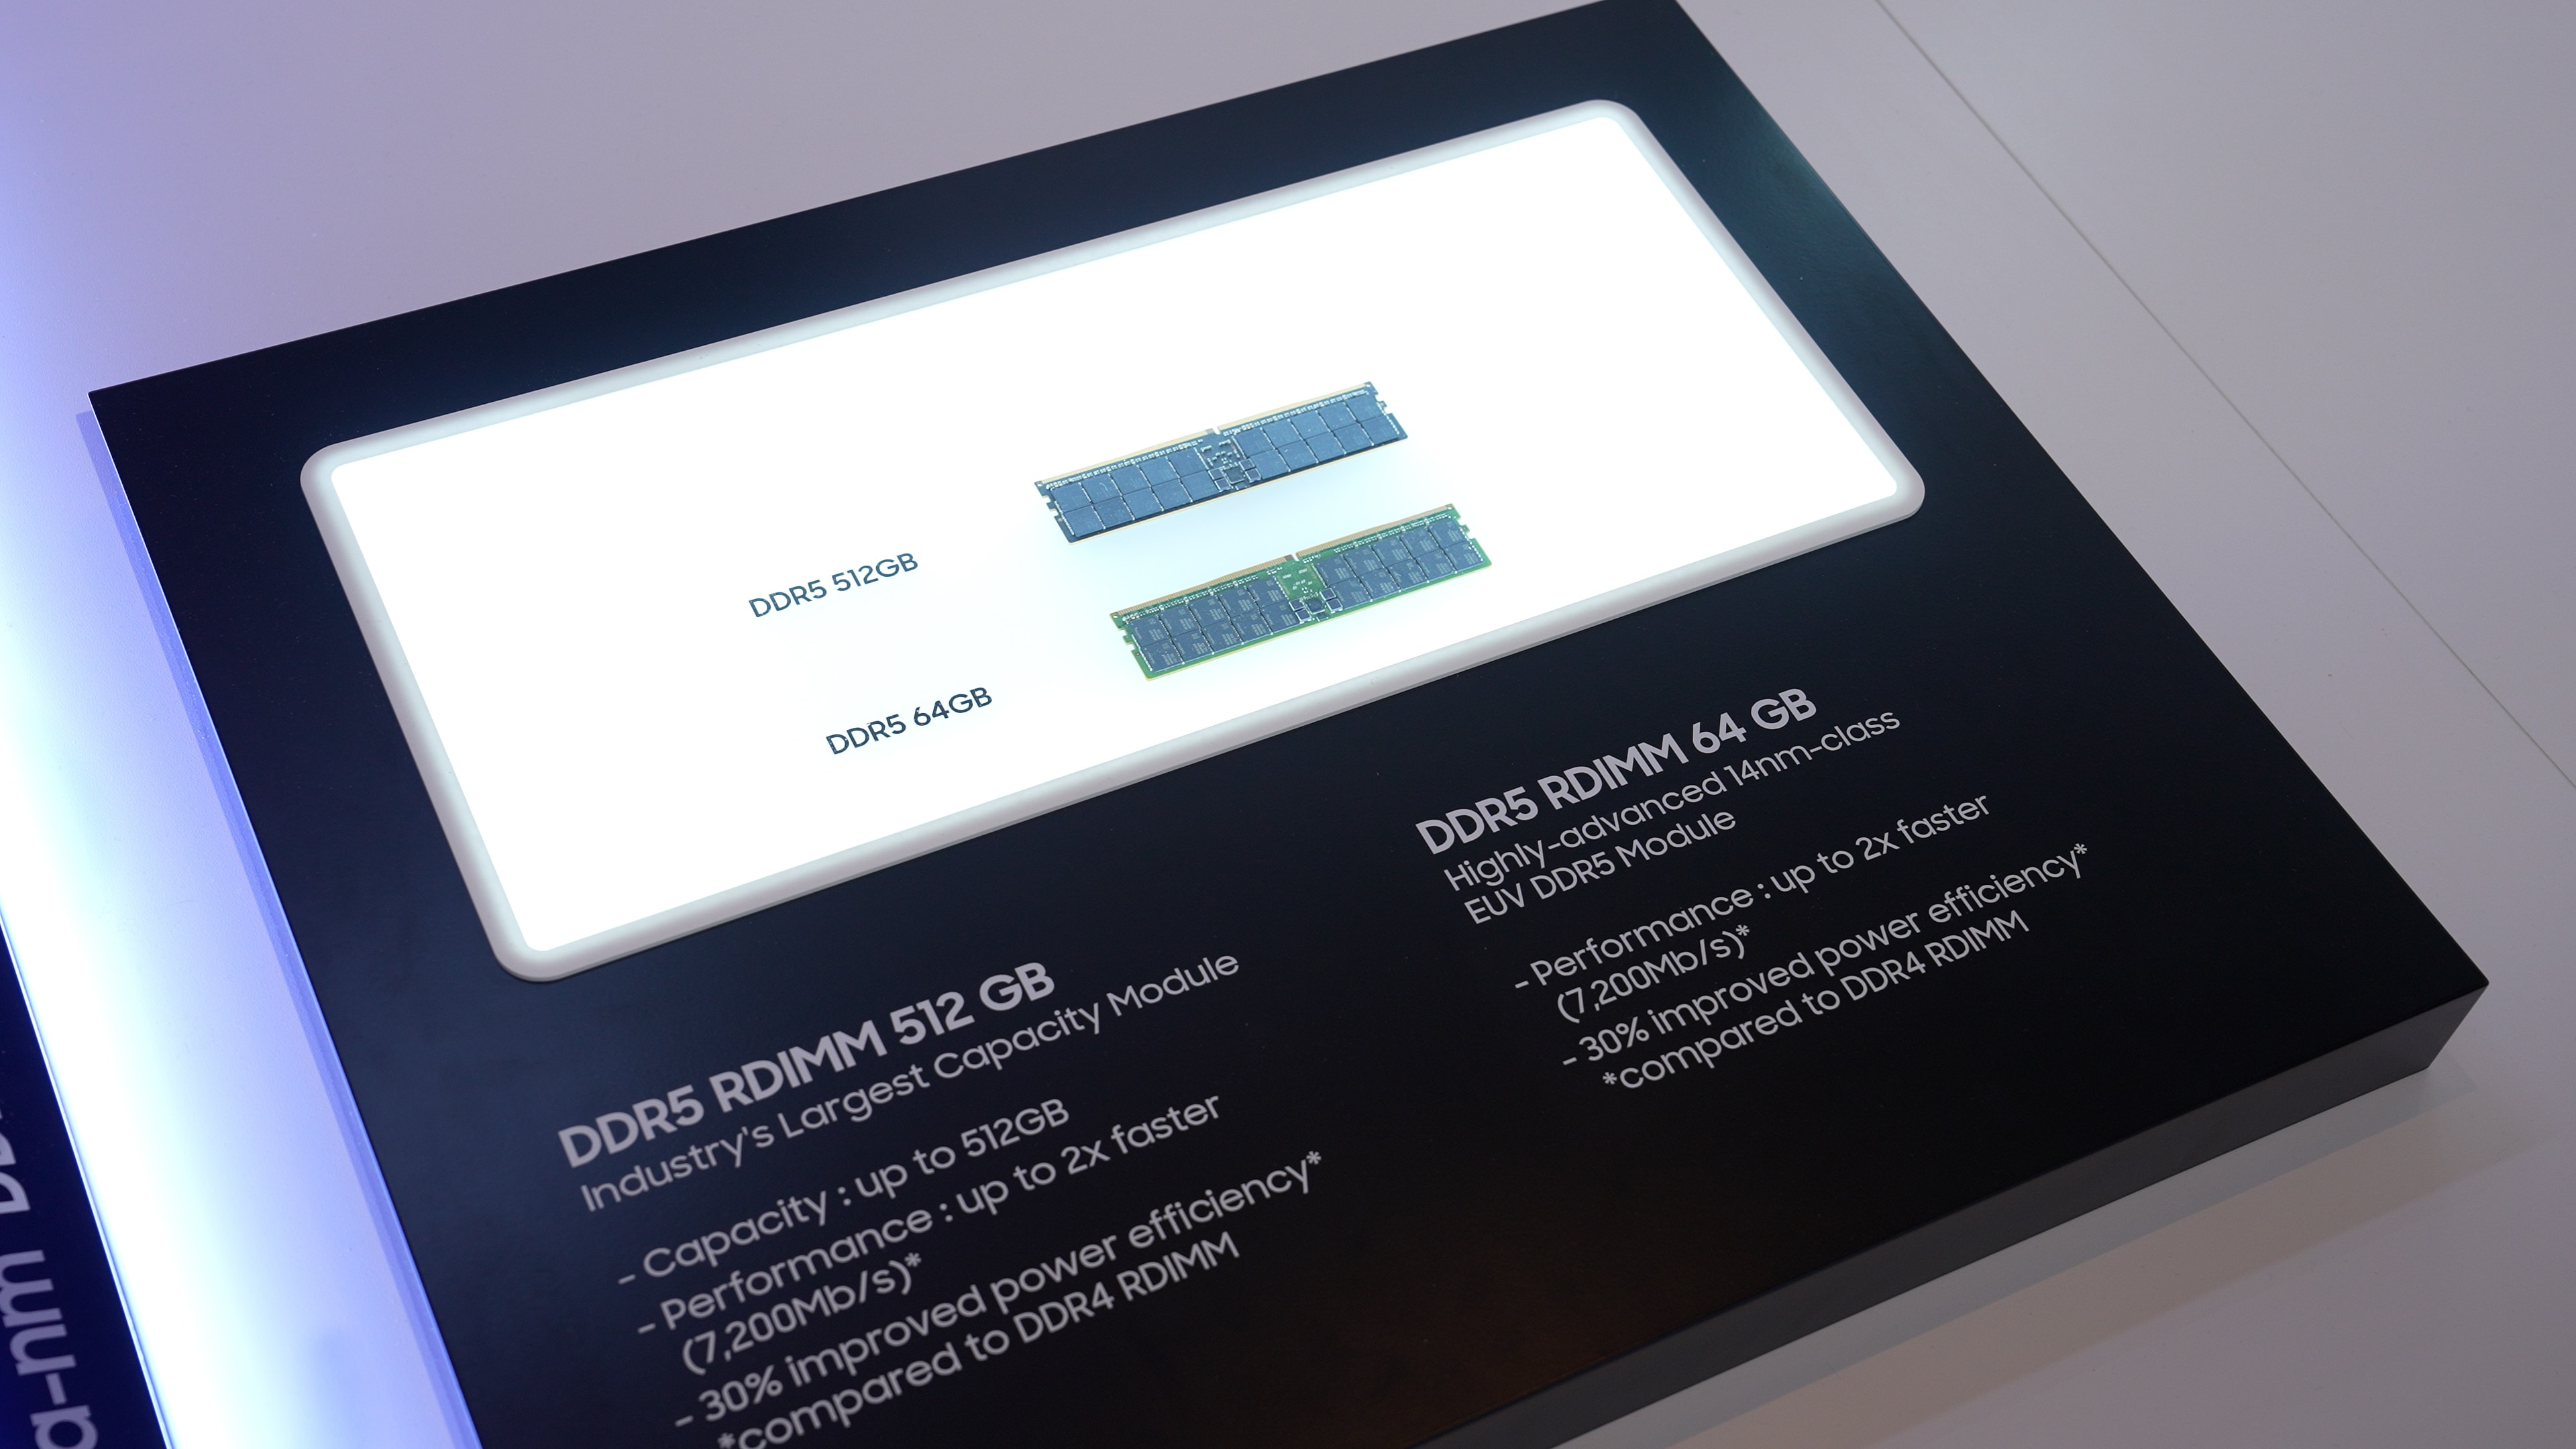 三星展示的新一代 DDR5 RDIMM 存储器产品具有更高的能效和性能，可轻松支持 3D 建模、游戏等应用。